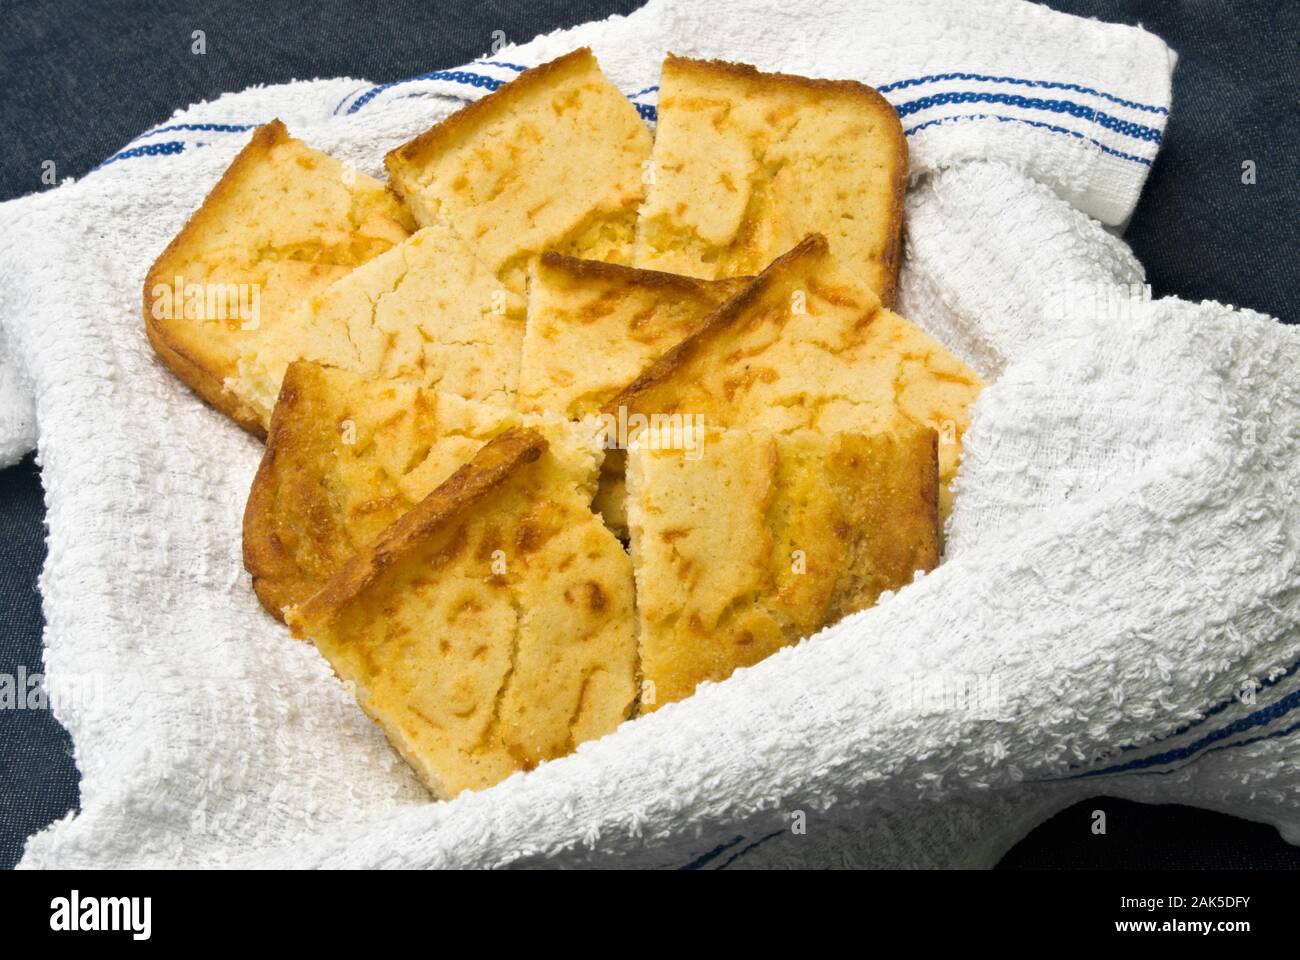 In casa giallo il pane di mais con una crosta croccante servita su un nuovo bianco asciugamano da cucina all'interno di un cestello. Lo sfondo è blu tessuto. Foto Stock